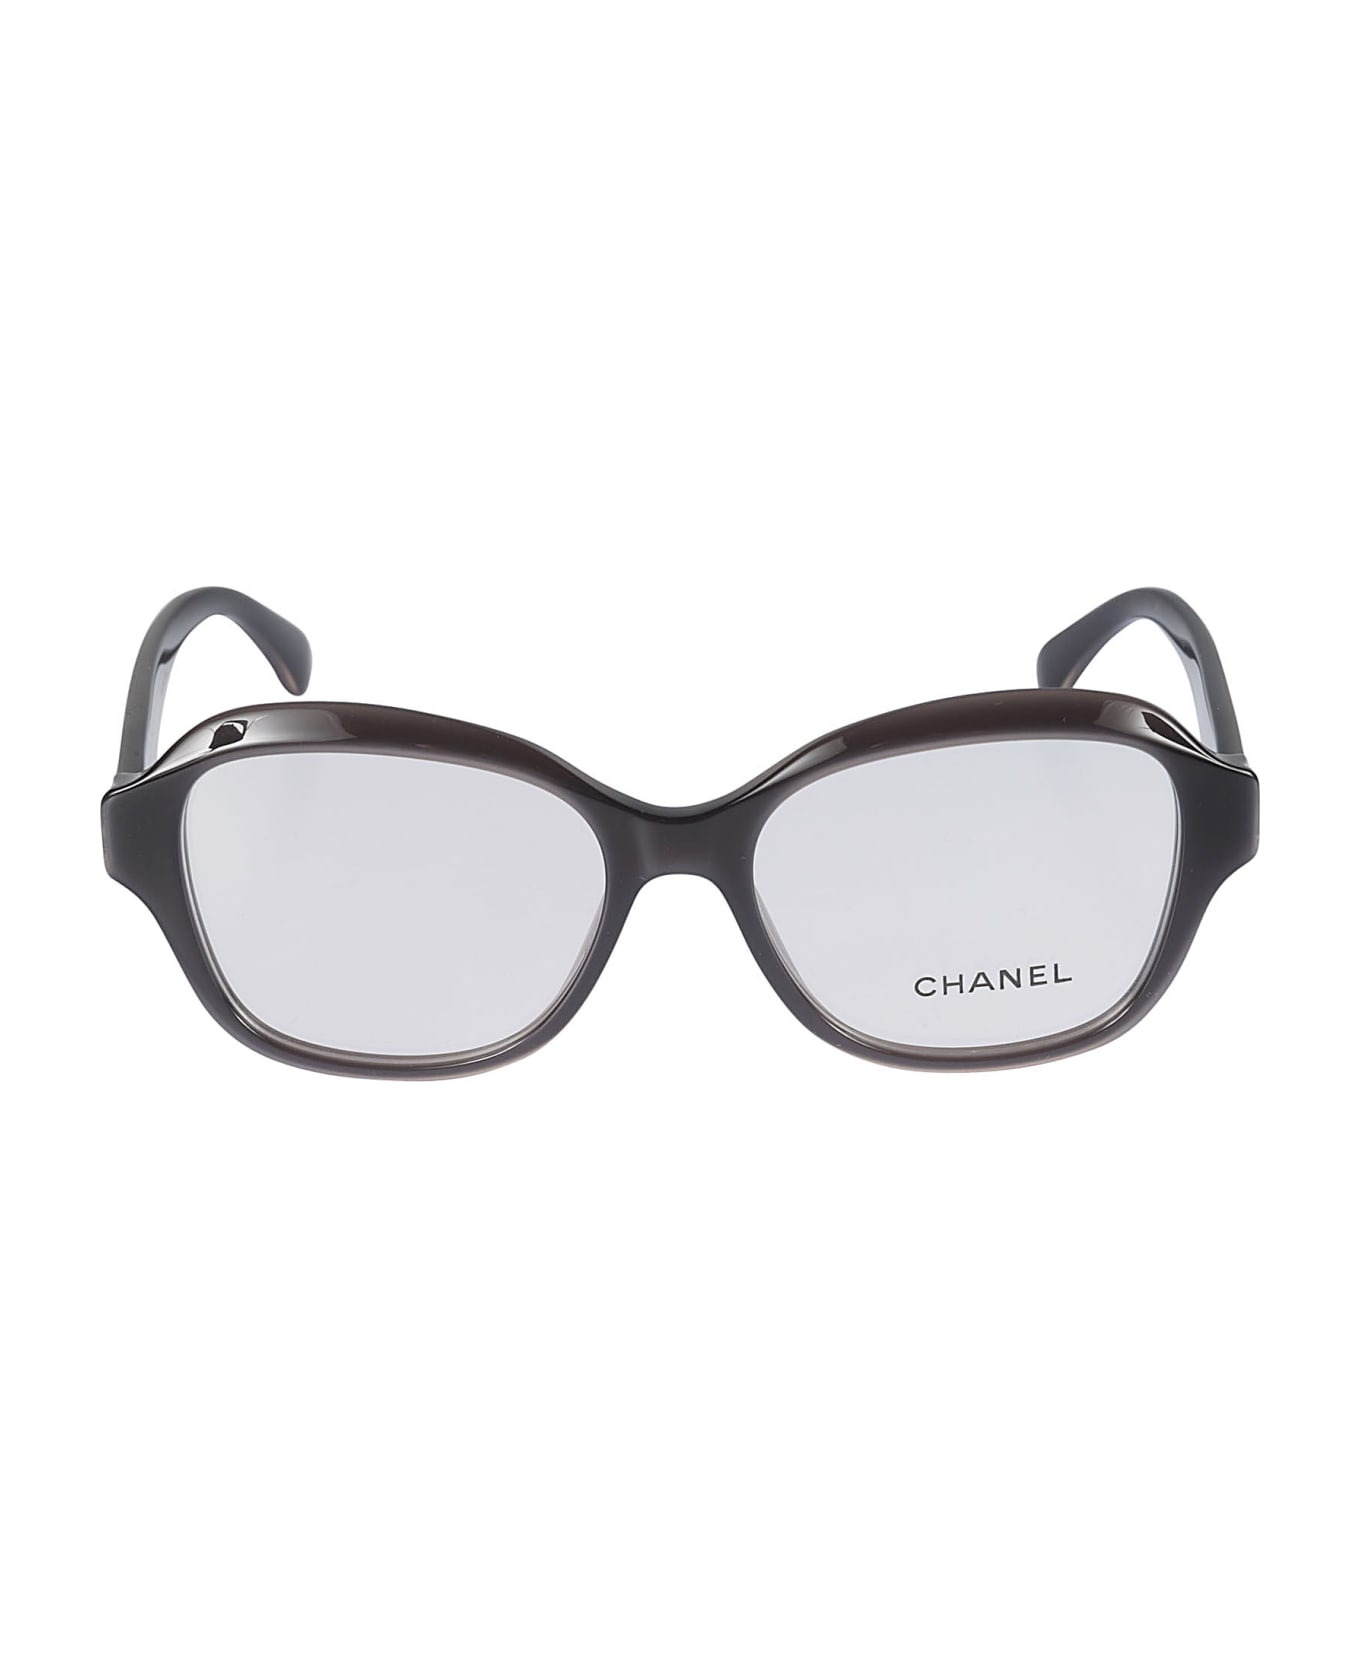 Chanel Square Glasses - 1716